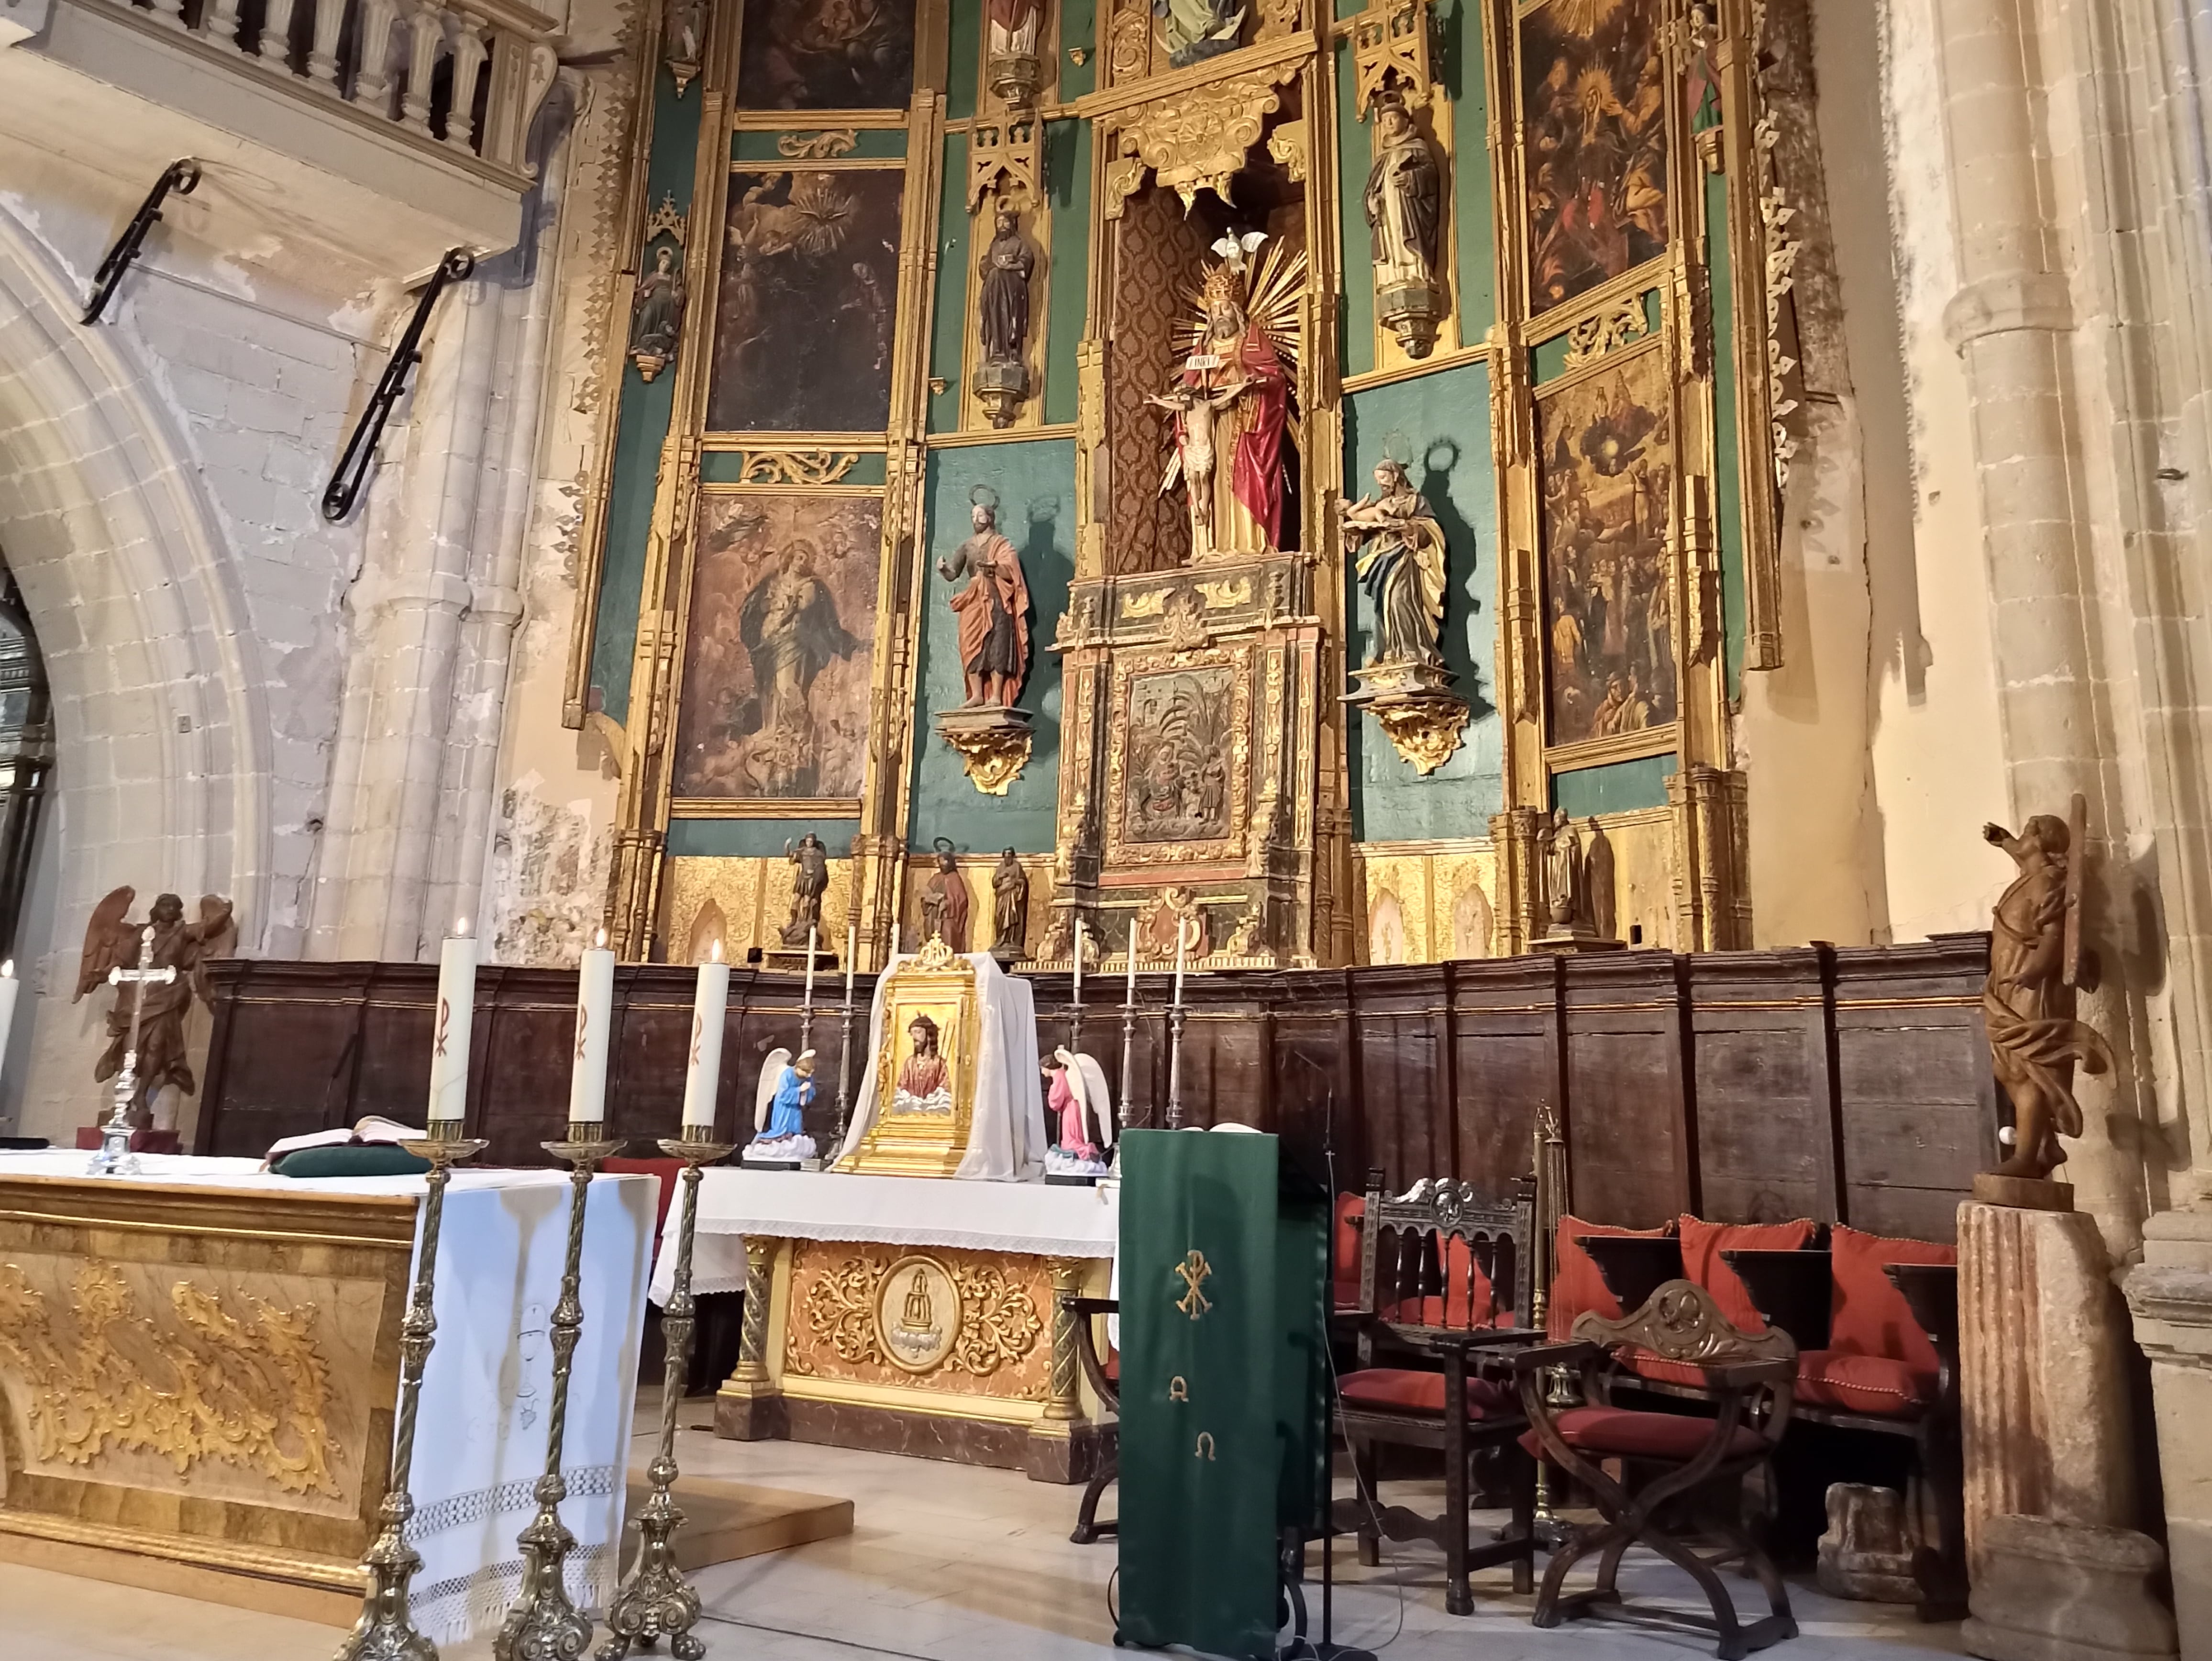 El retablo de la iglesia de la Santísima Trinidad de Alcaraz (Albacete), antes de su restauración, con el aspecto que tenían las ocho tablas y las esculturas hasta octubre de 2020.